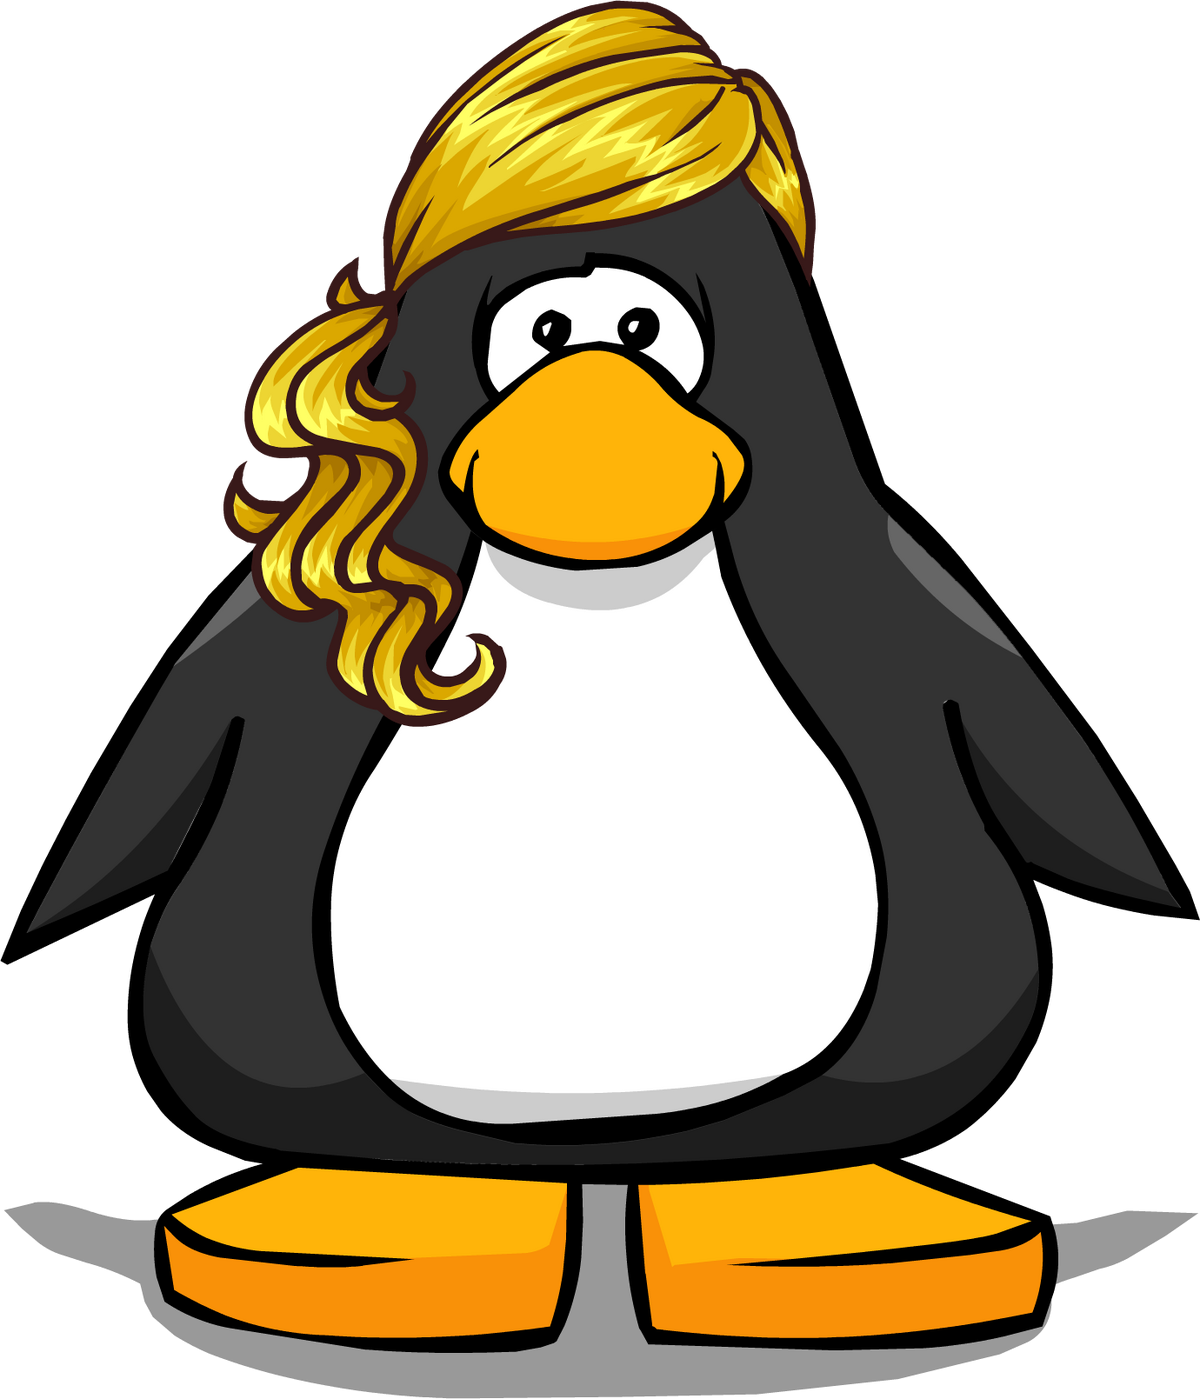 Category:Wigs | Club Penguin Wiki | Fandom